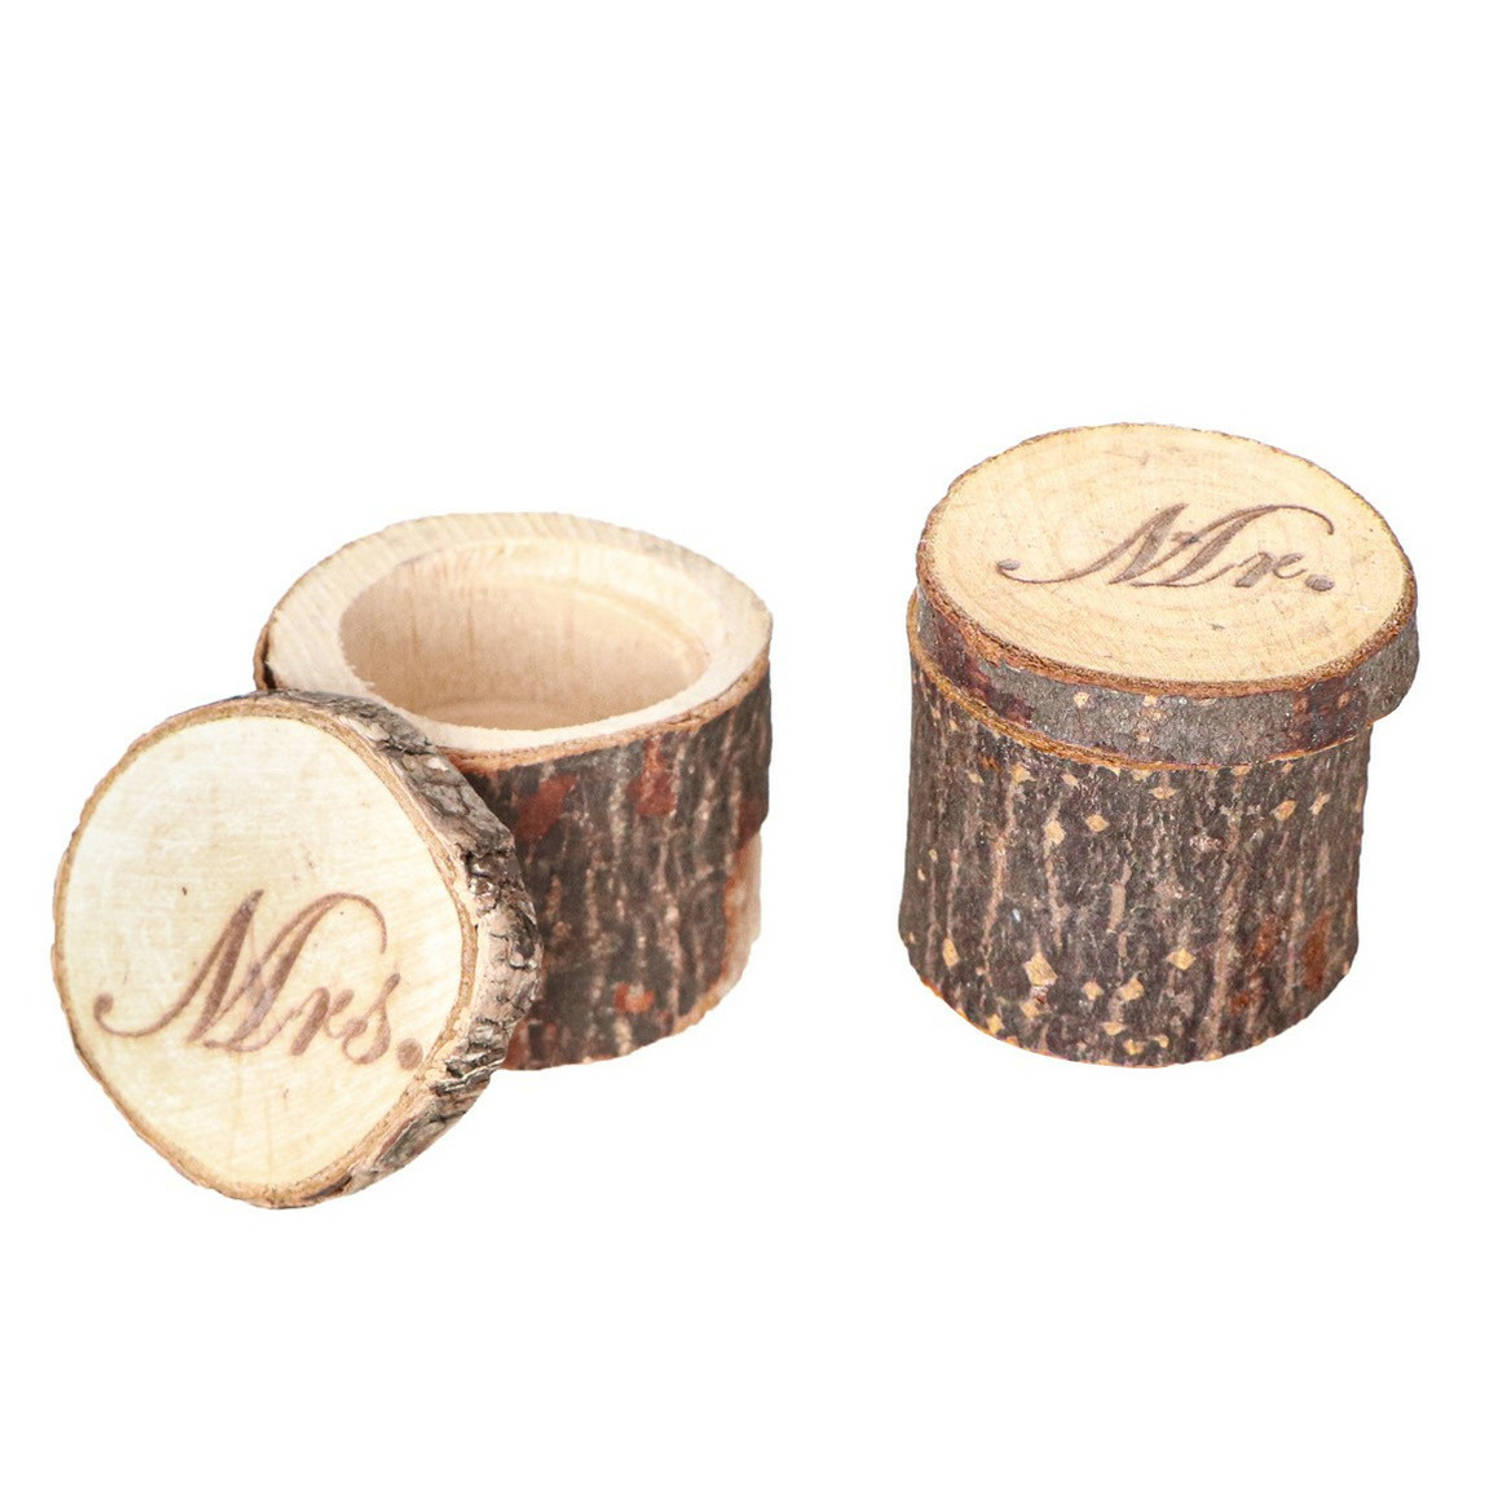 Chaks Bruiloft/huwelijk trouwringen boomstammetje hout - MR & MRS - alternatief ringdoosje - D6 x H4 cm